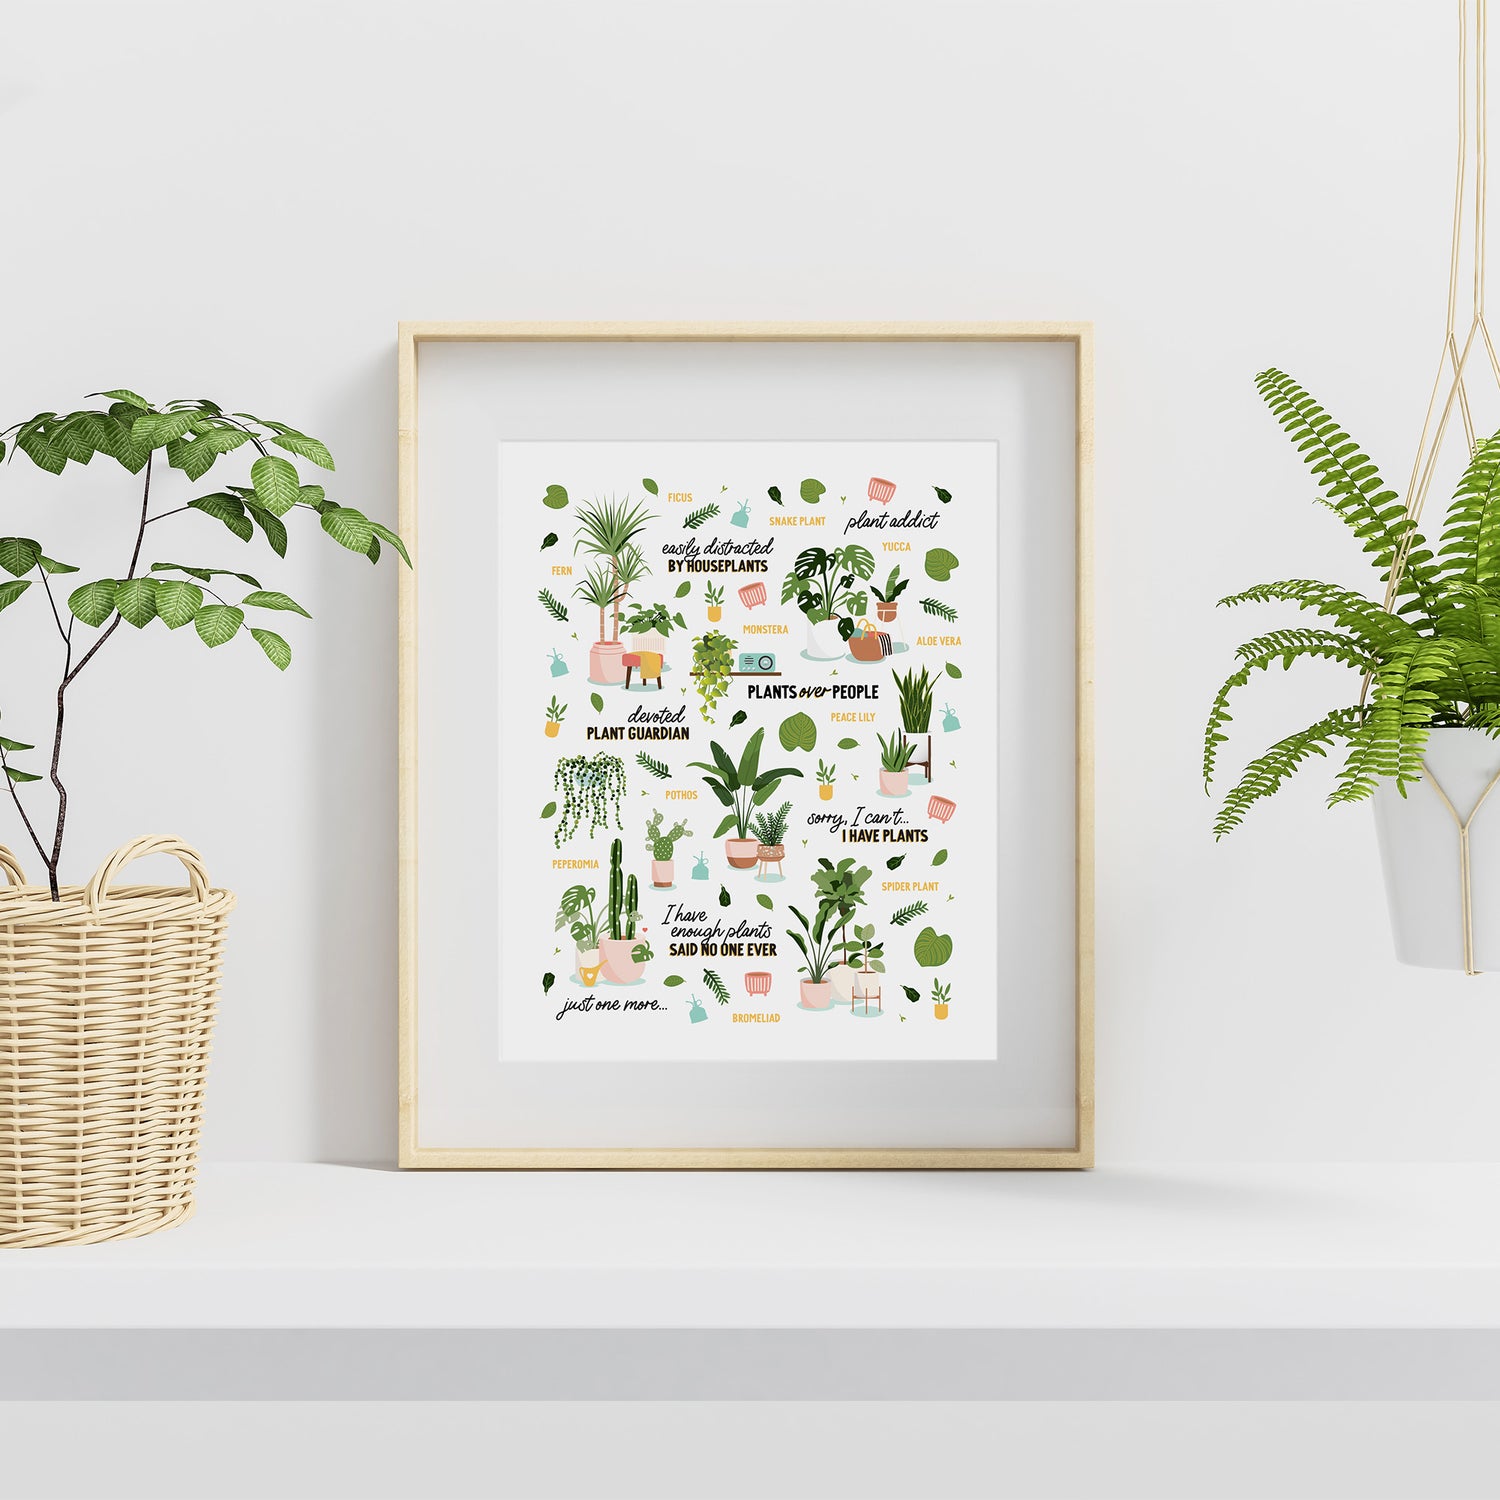 Plant lovers art print in frame on shelf